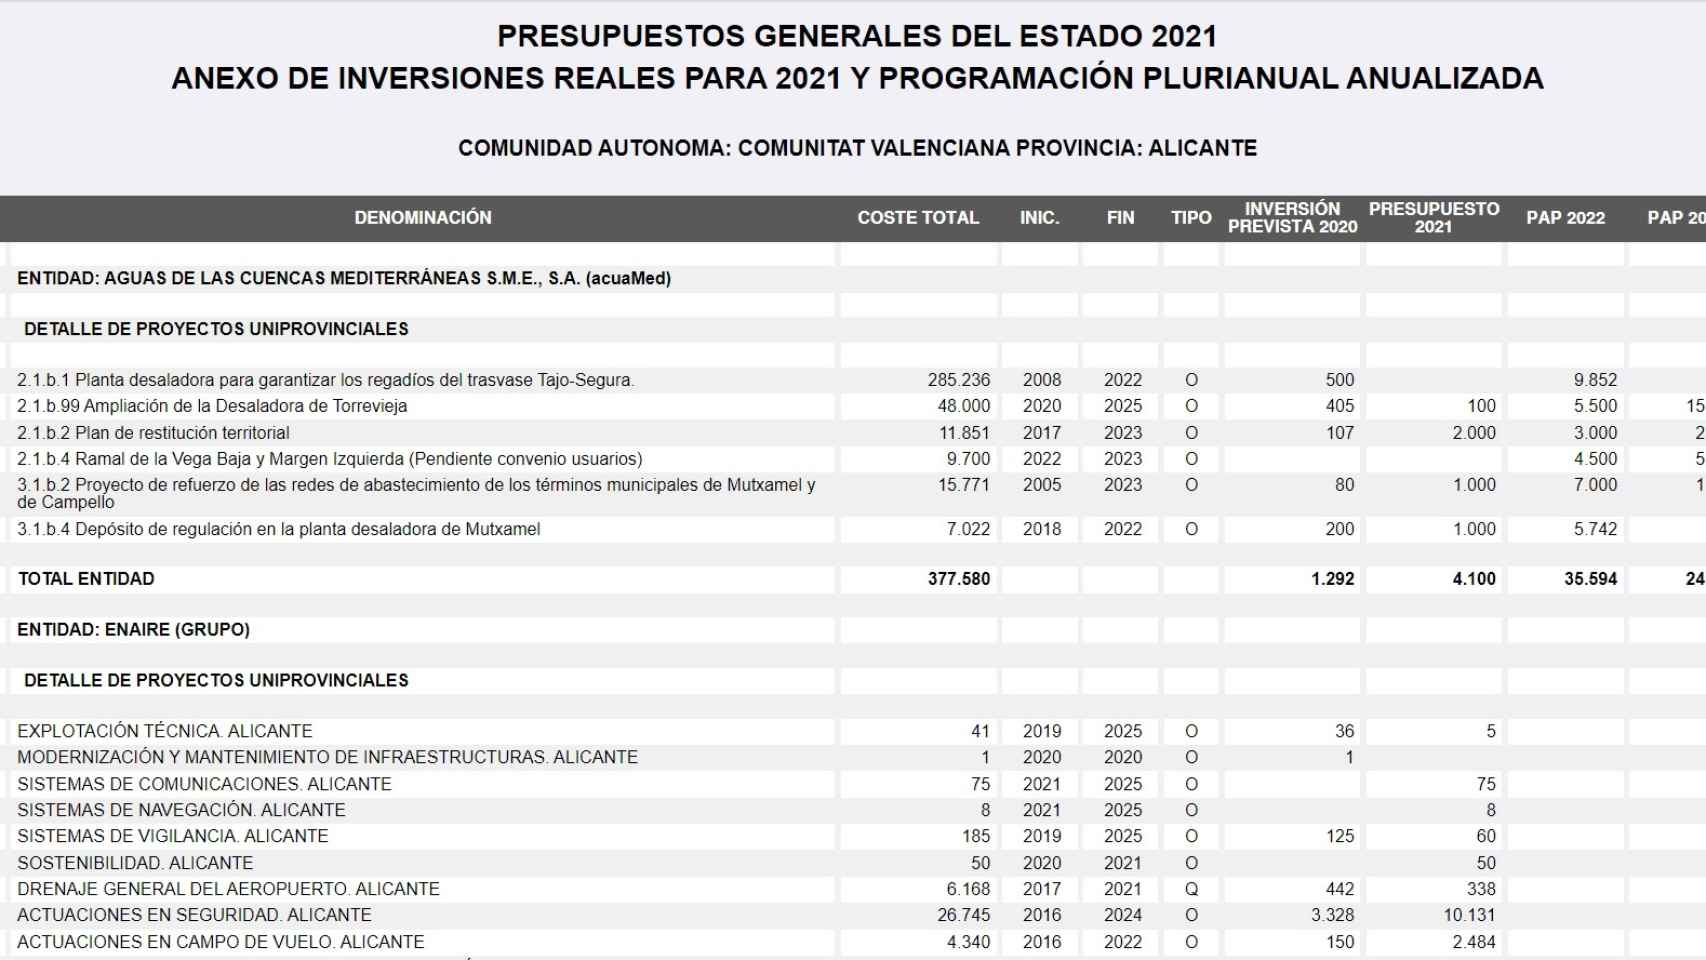 Inversiones Acuamed según los PGE.